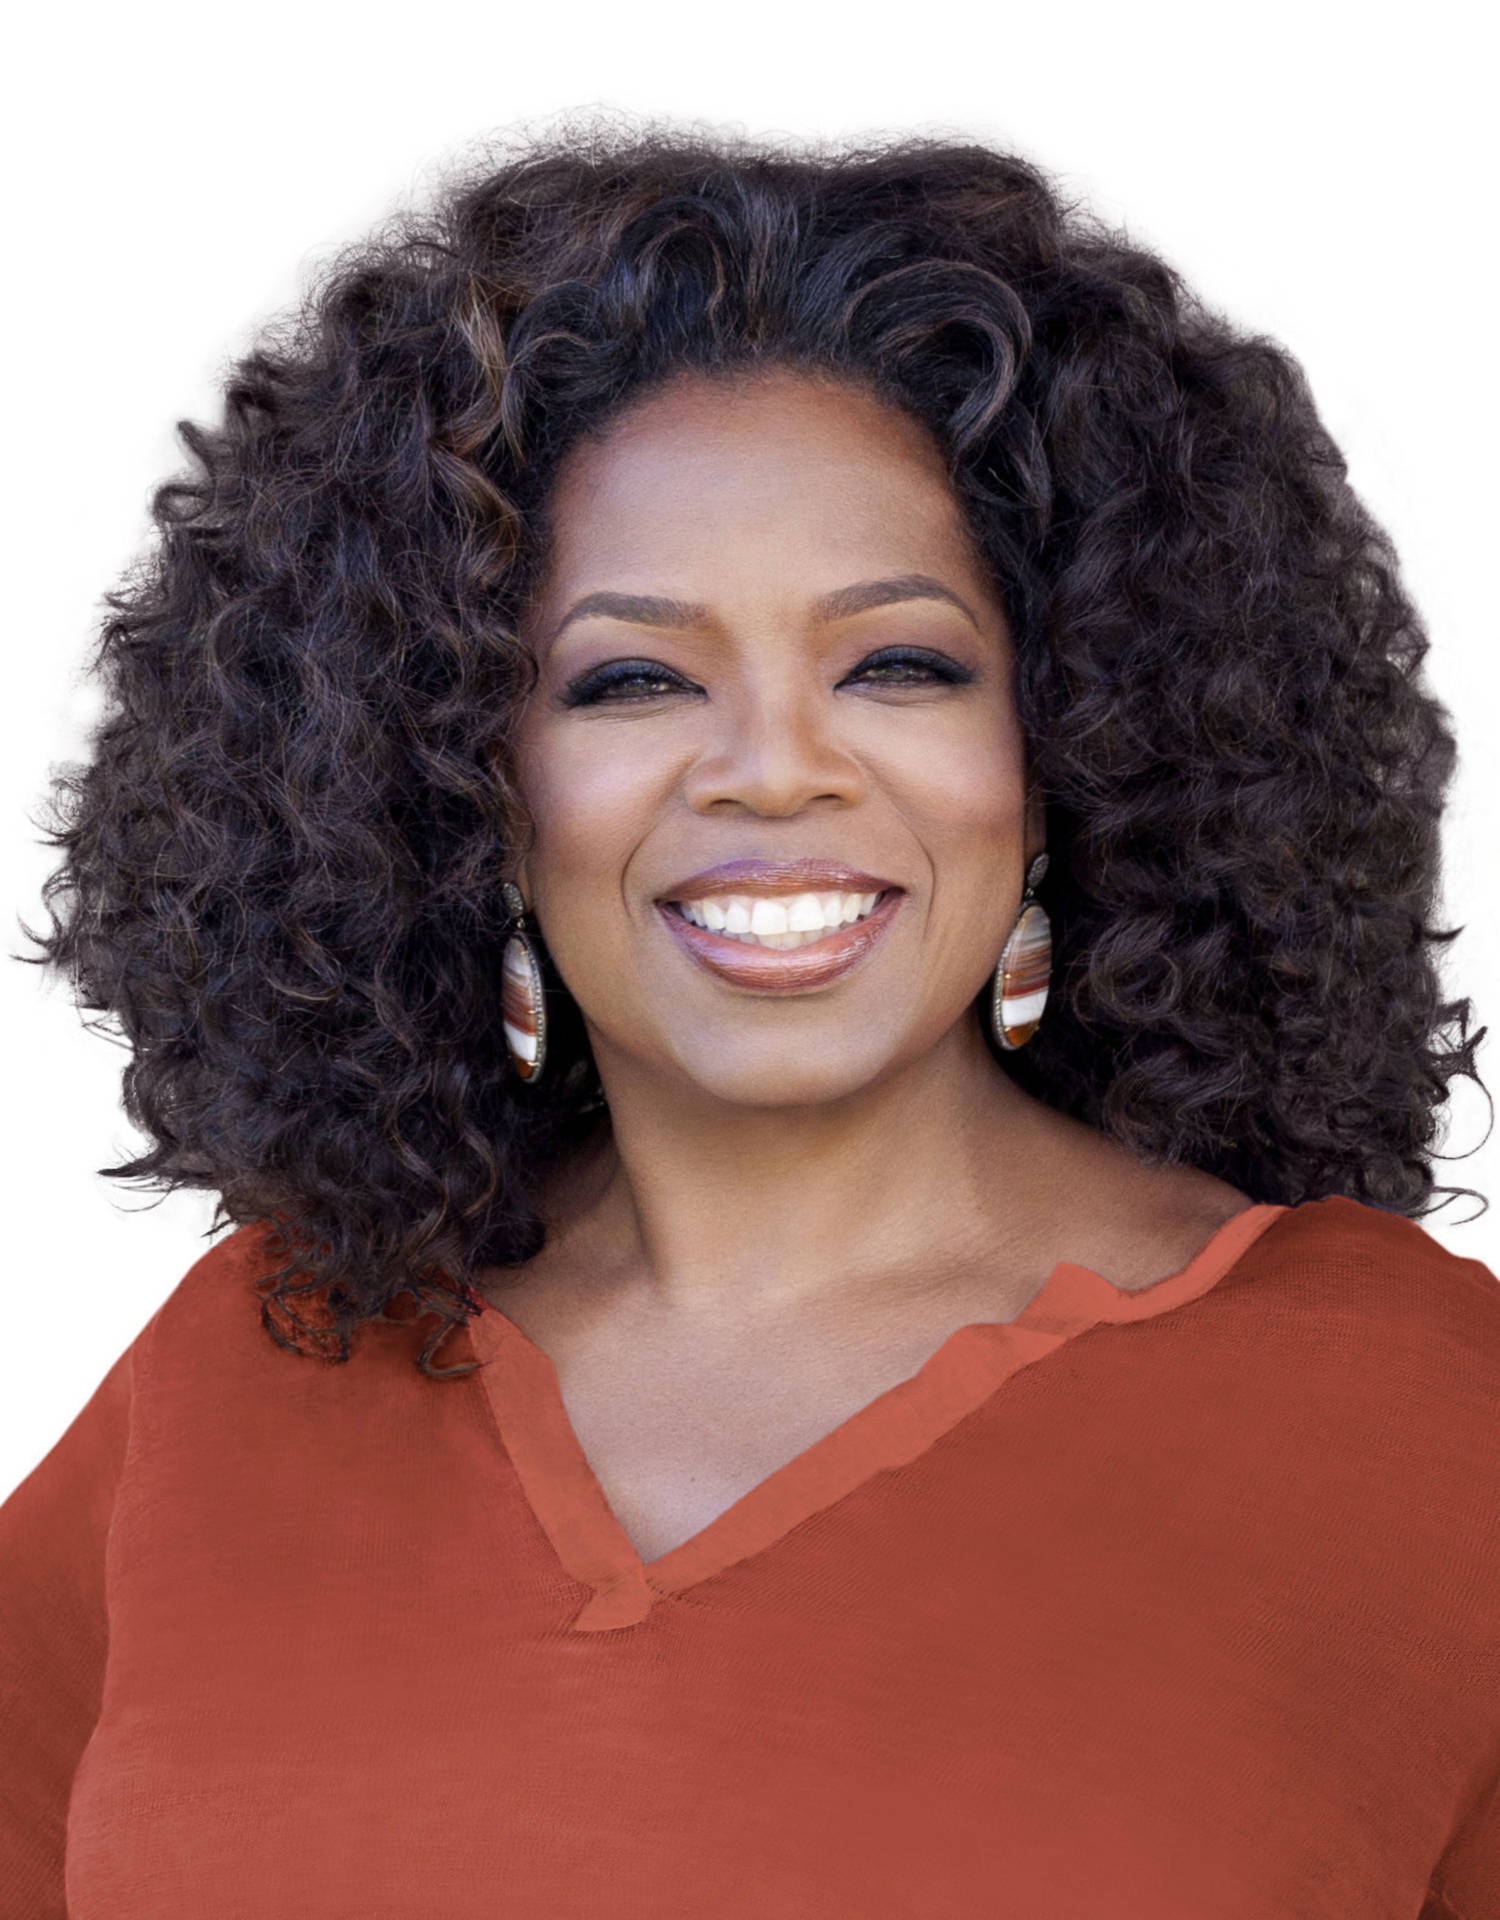 Oprah Winfrey Portrait Background